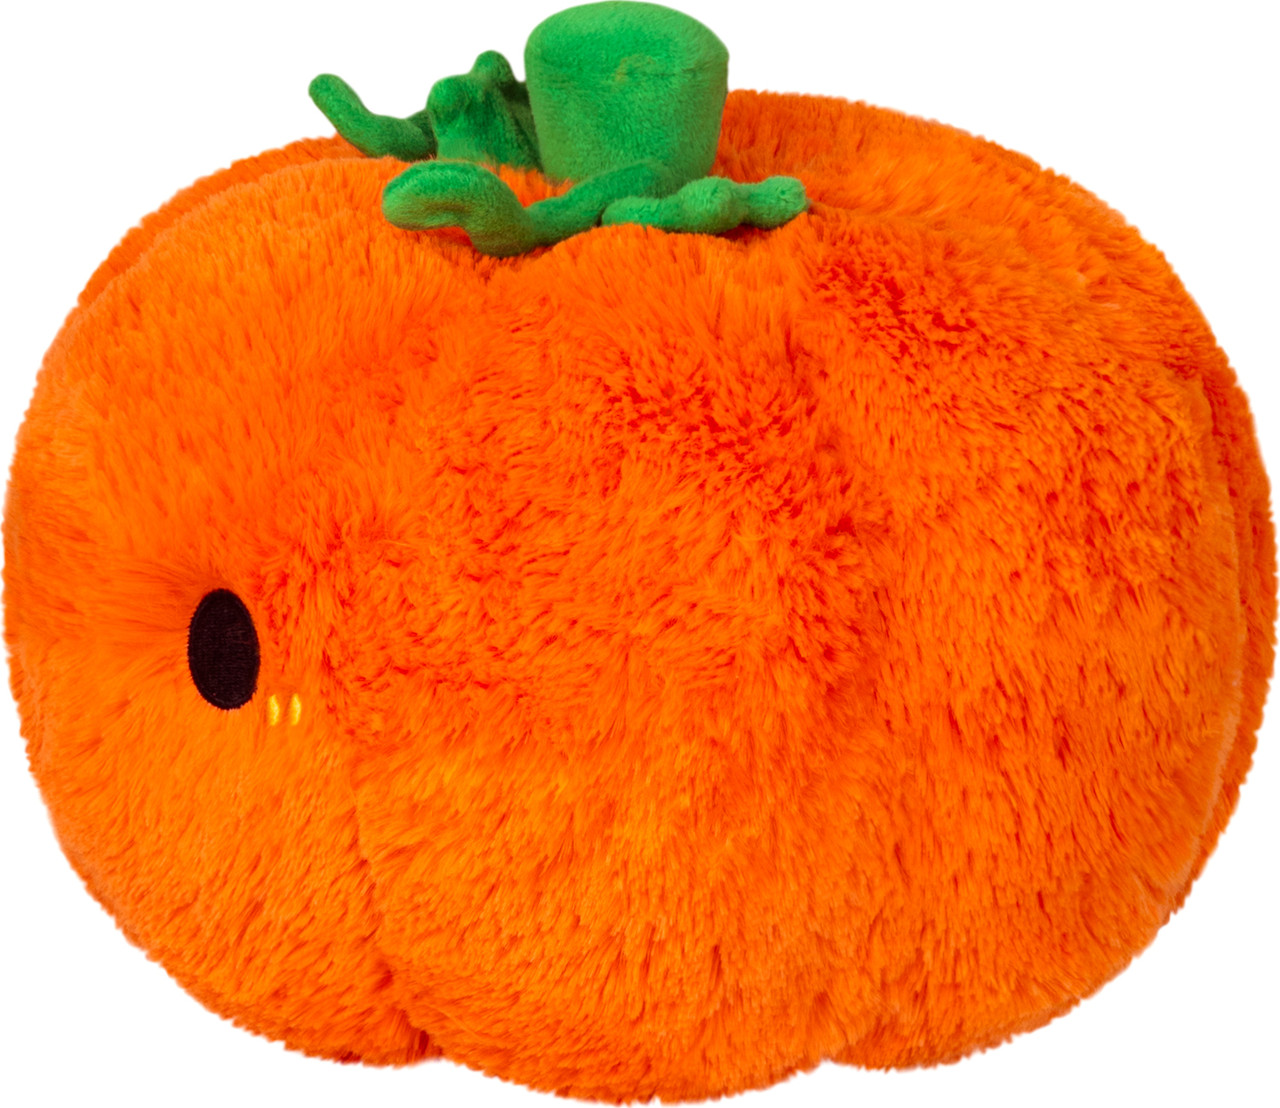 Mini Squishable Pumpkin 3